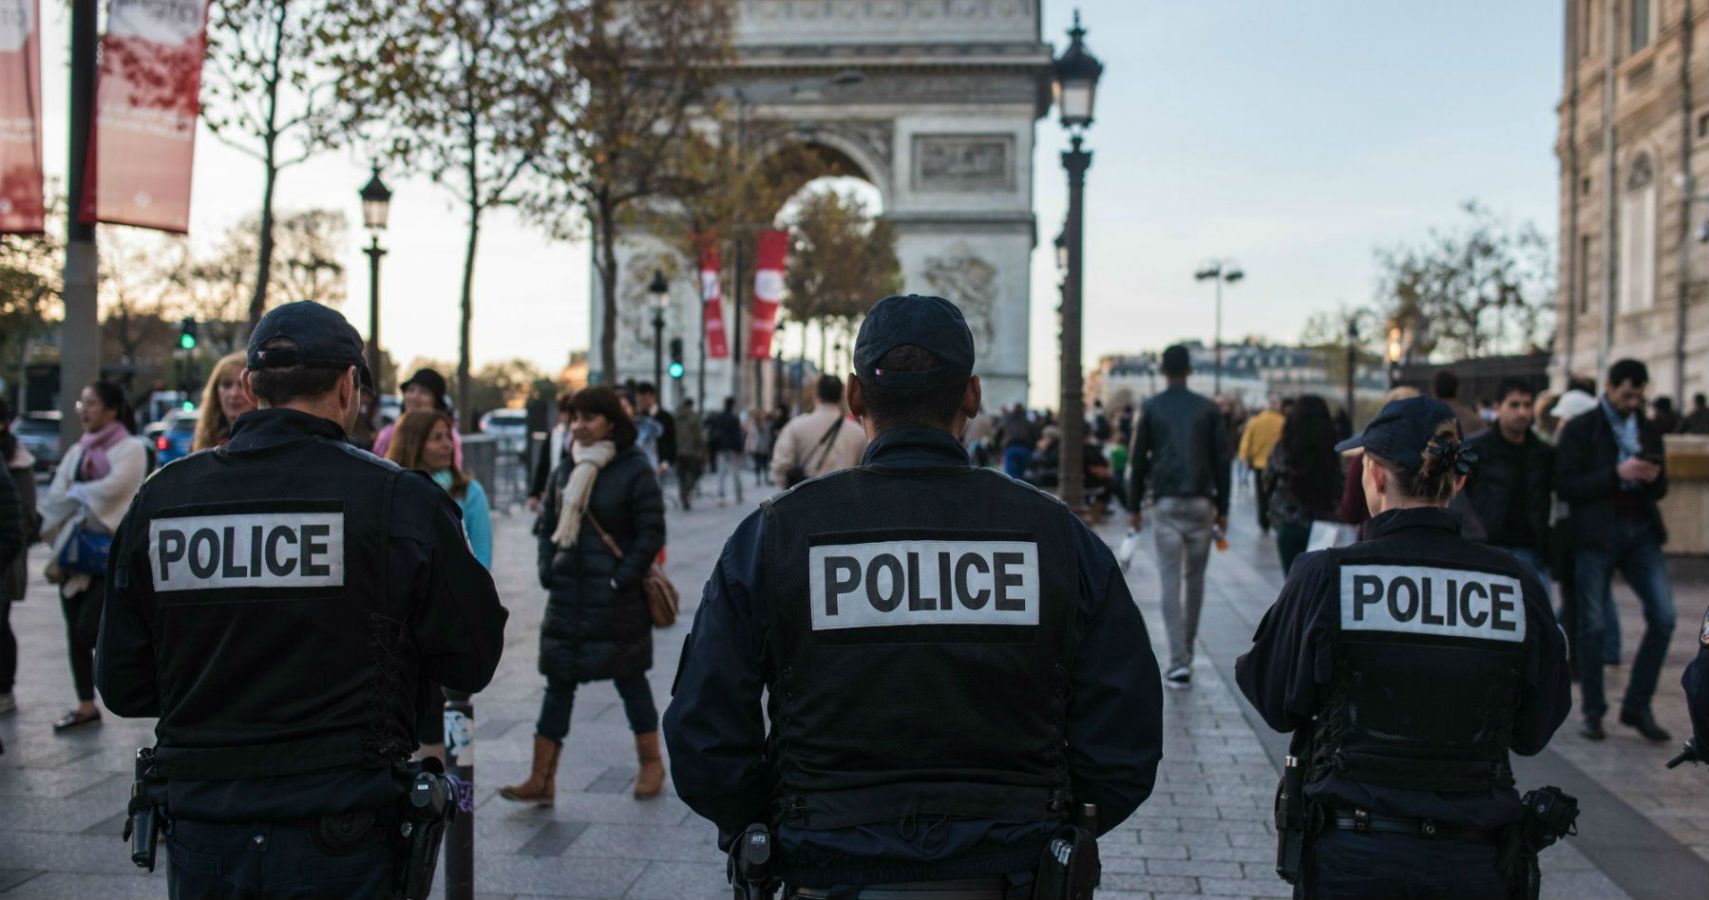 Paris enviara 5000 policiais extras neste verao para proteger os